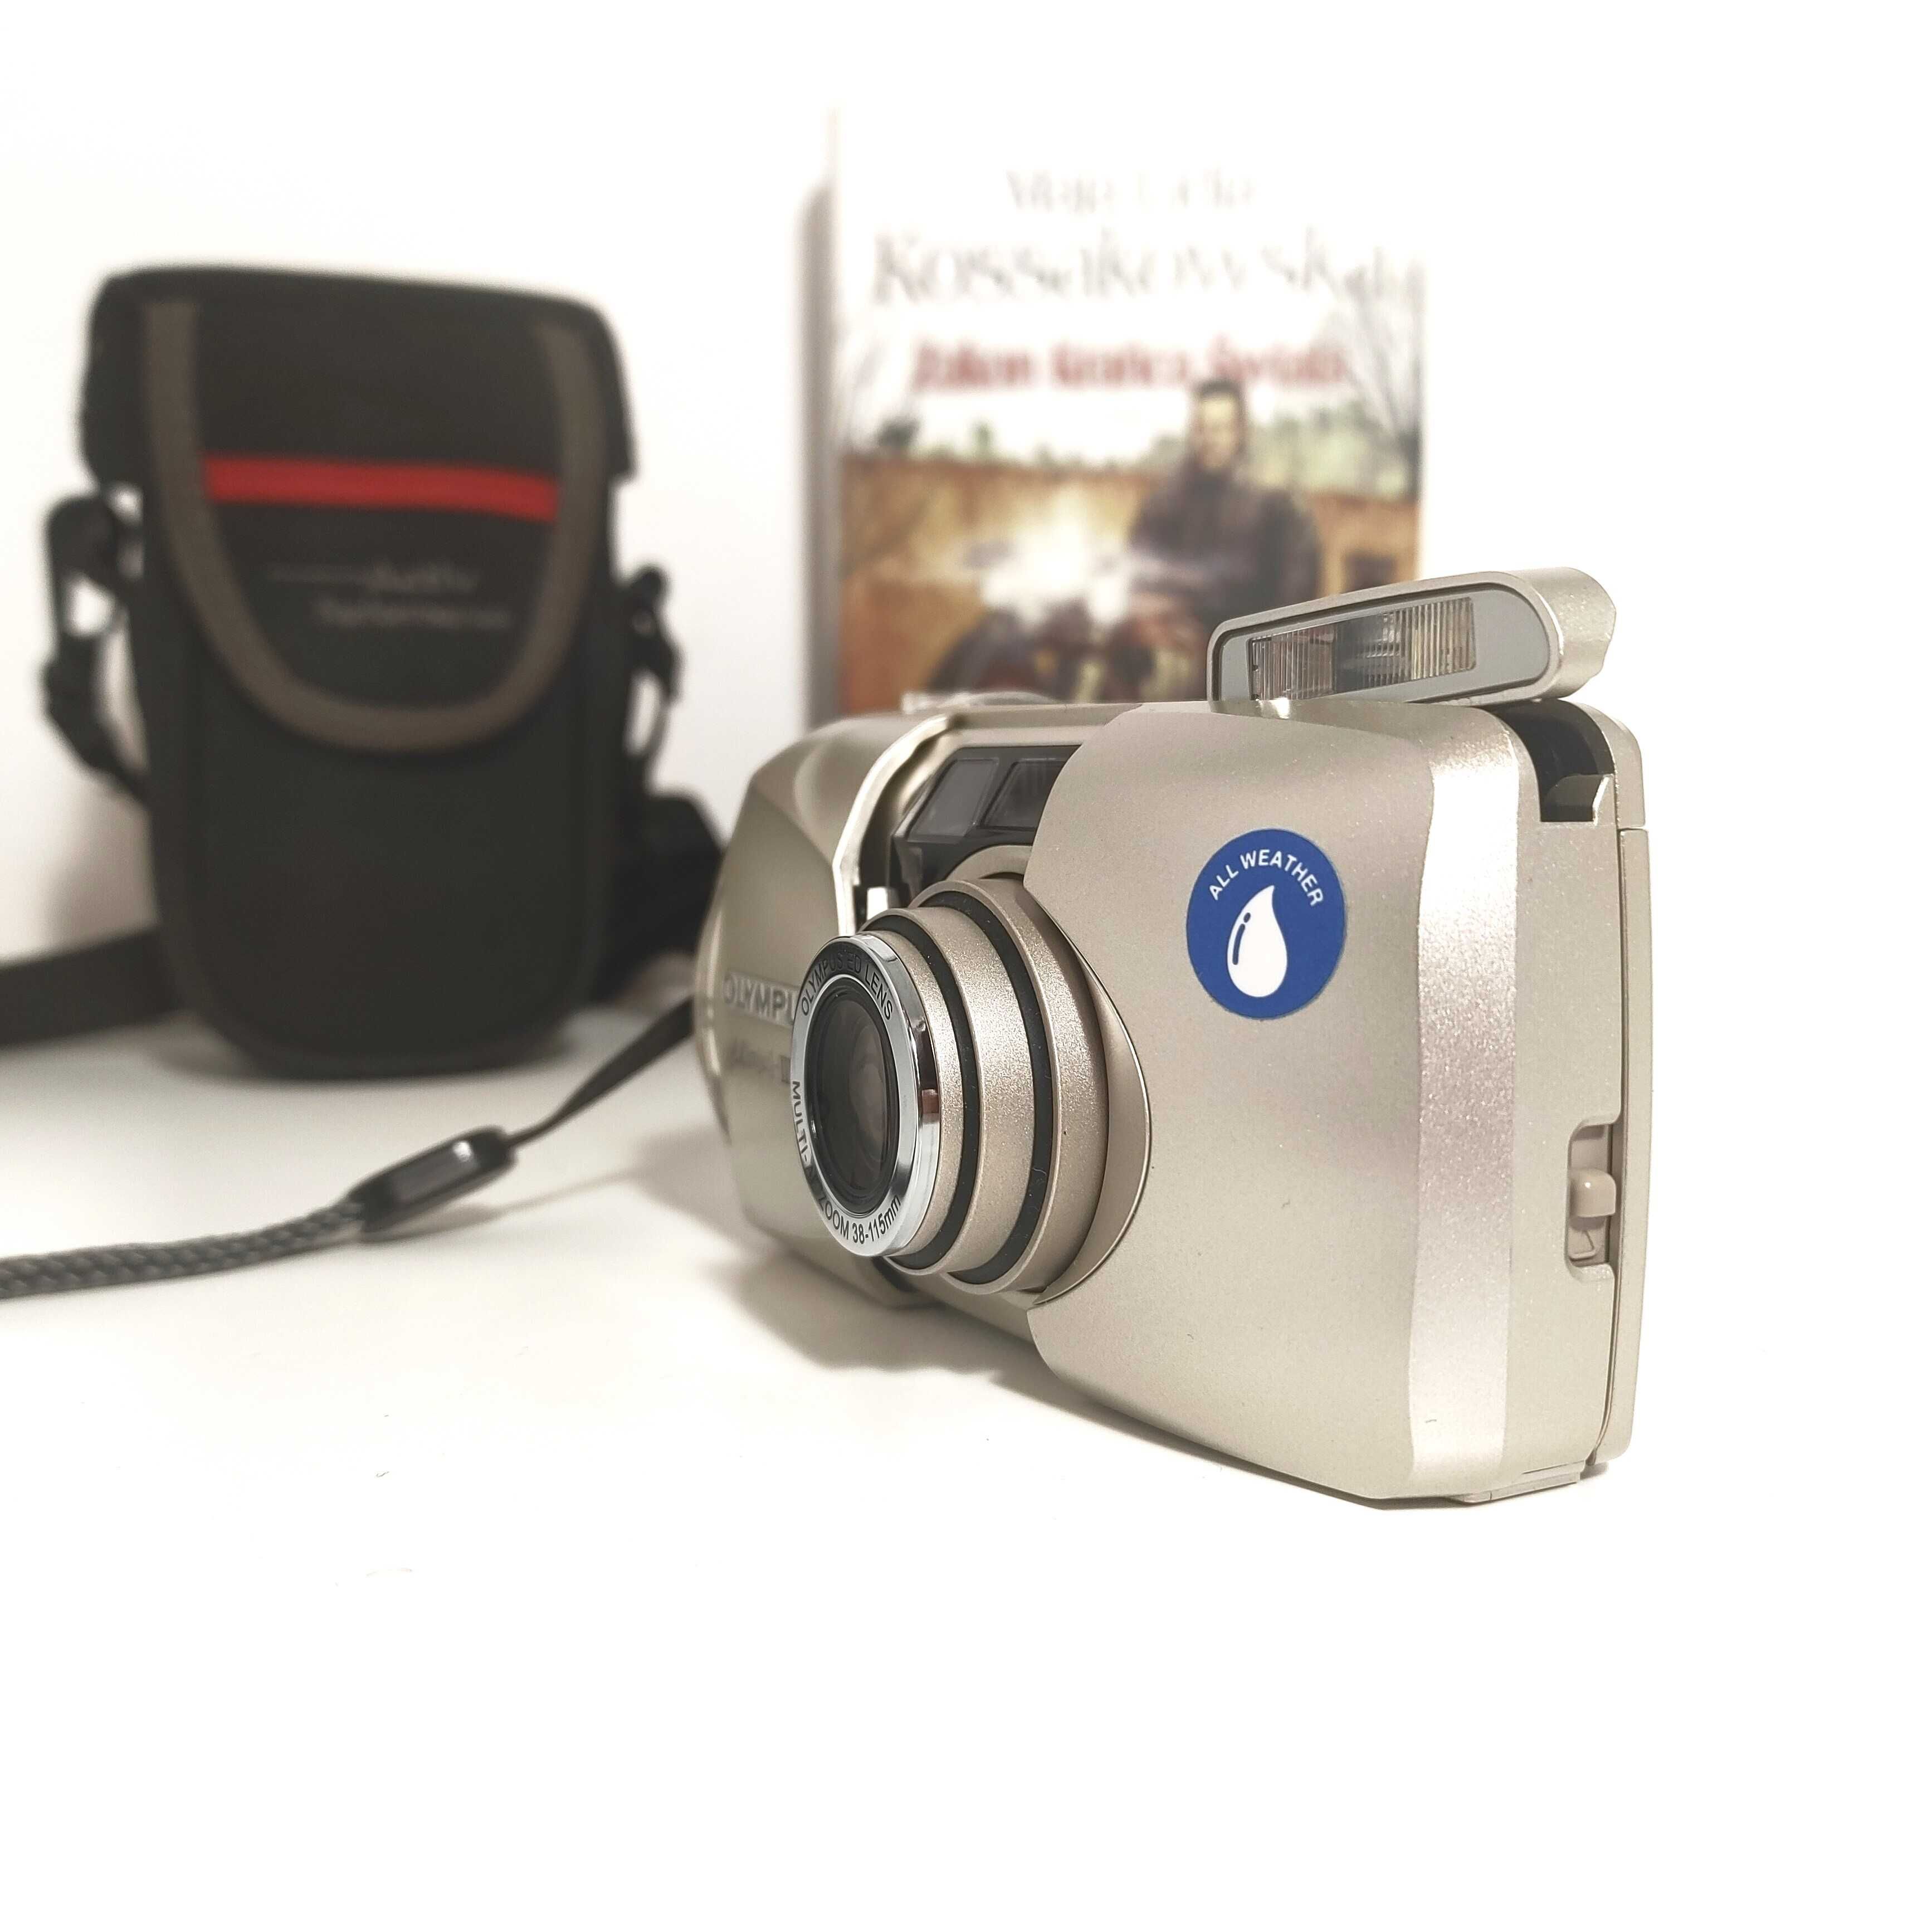 Kompaktowy aparat fotograficzny OLYMPUS mju III 115.